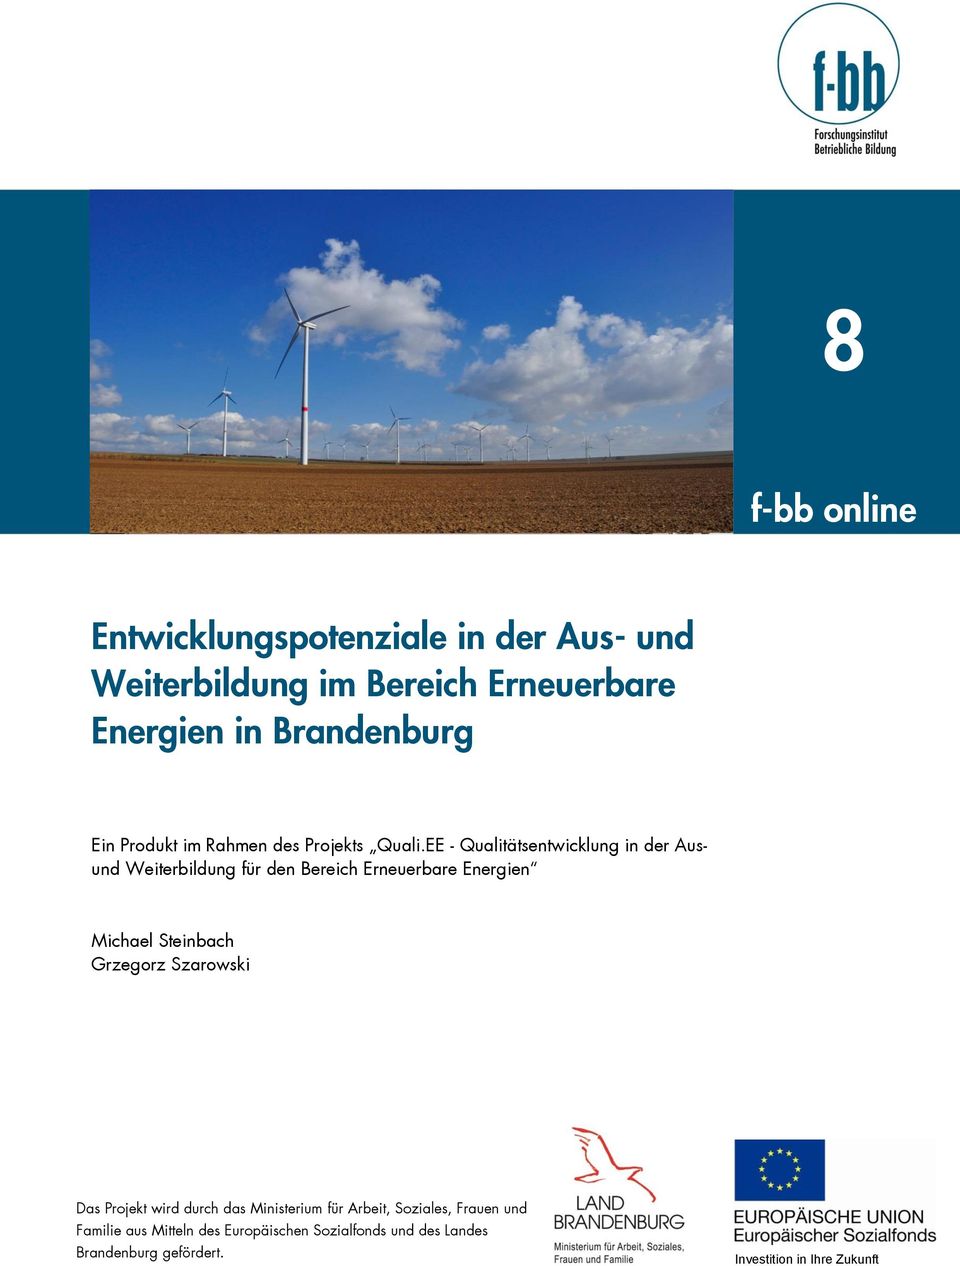 EE - Qualitätsentwicklung in der Ausund Weiterbildung für den Bereich Erneuerbare Energien Michael Steinbach Grzegorz